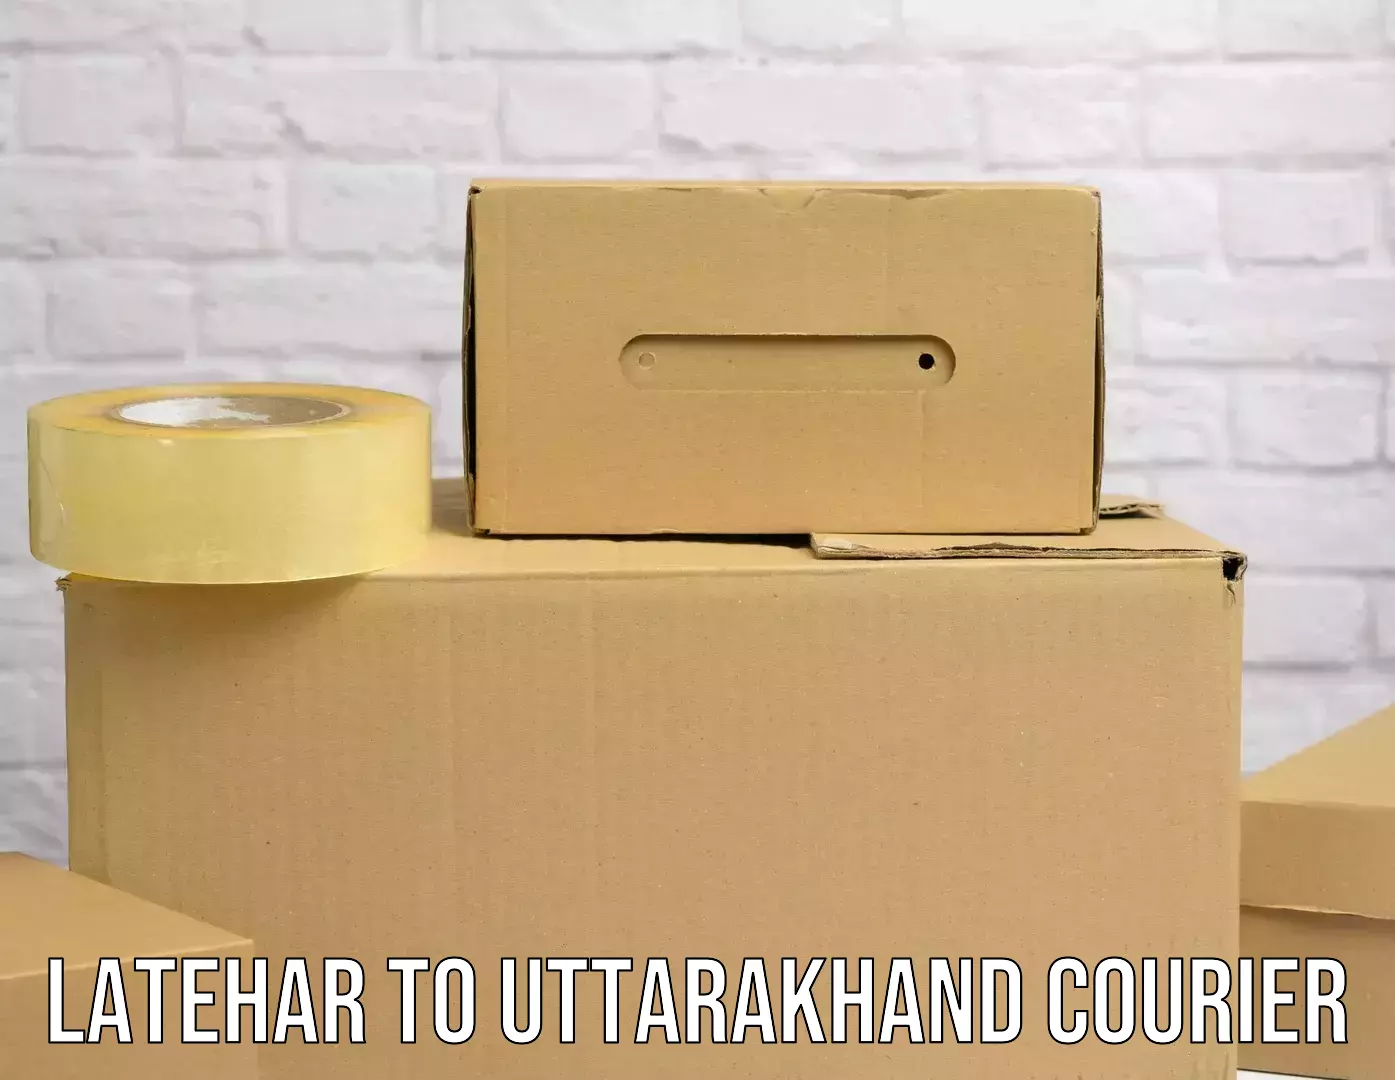 International courier networks Latehar to Uttarakhand